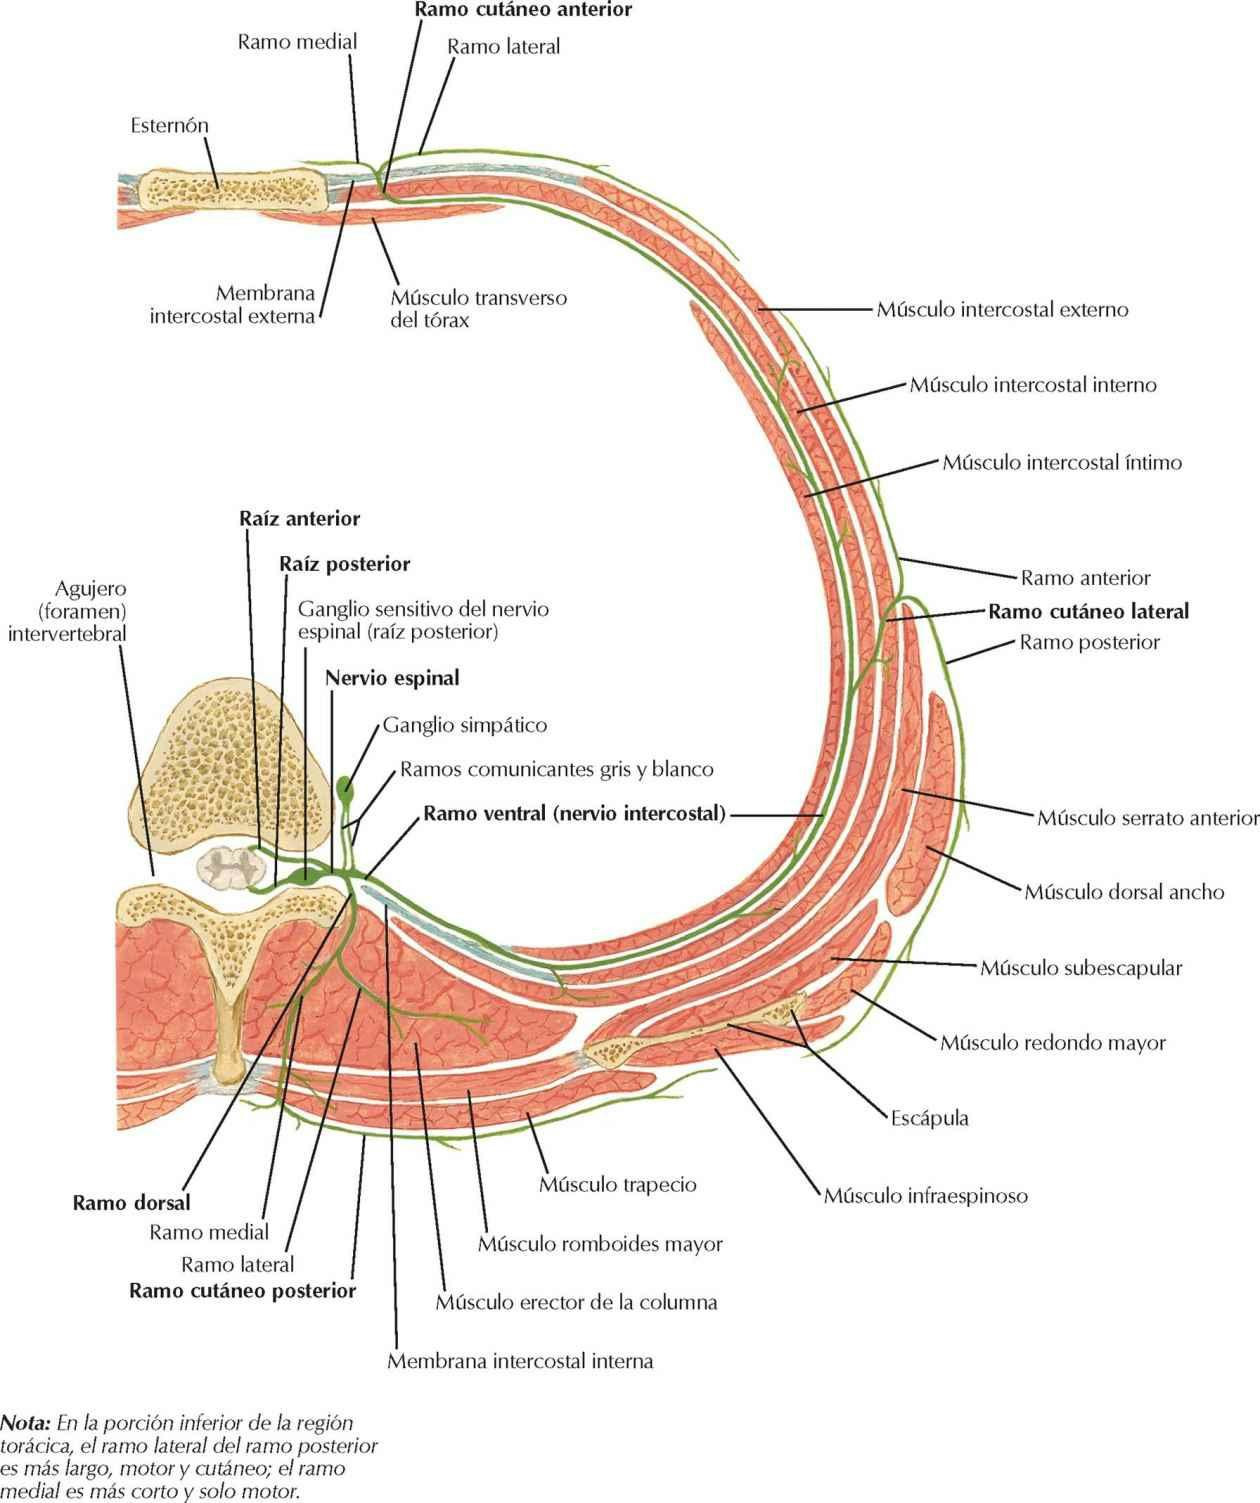 Nervio espinal torácico típico: sección transversal